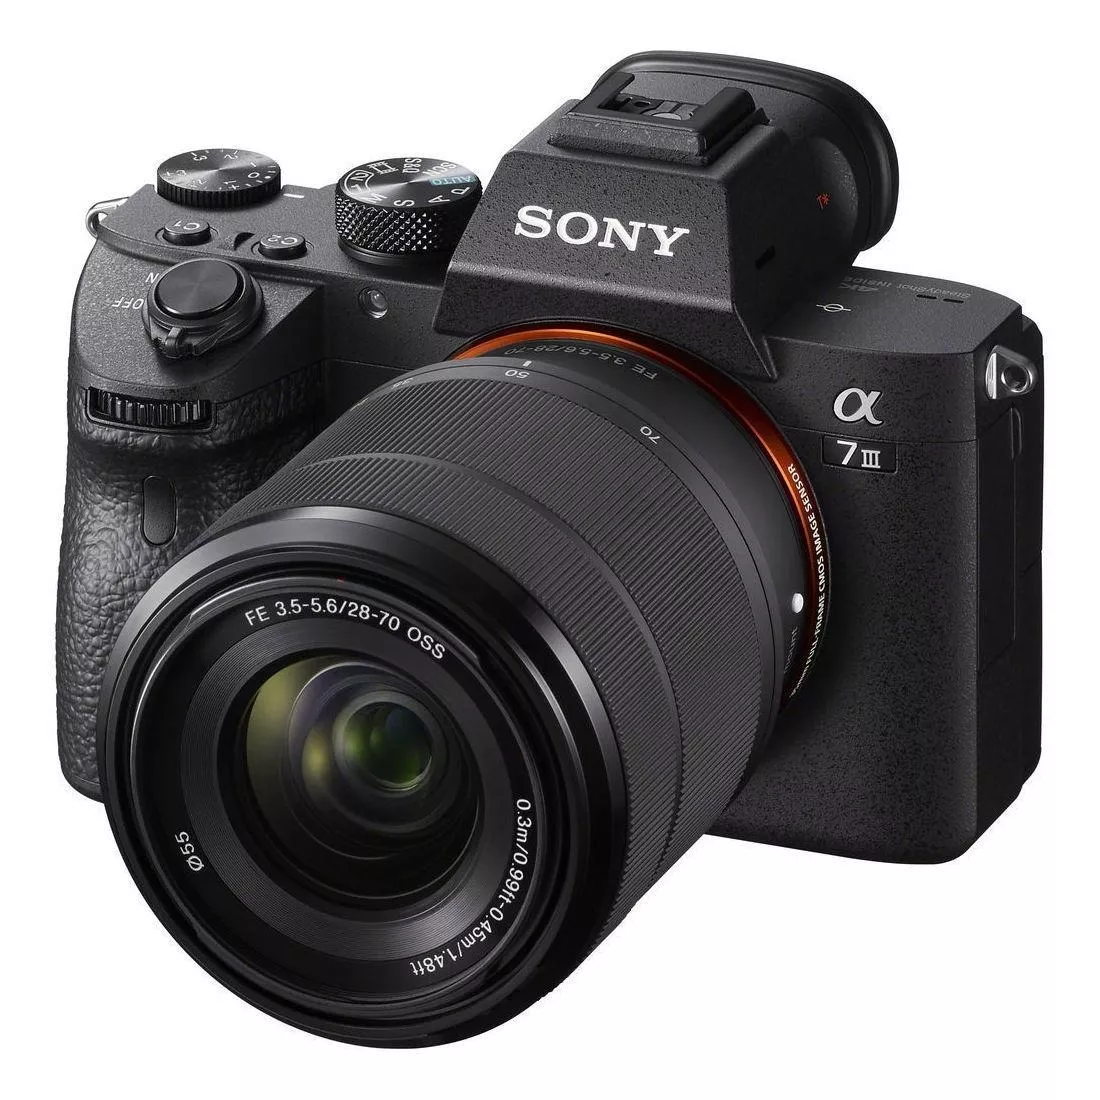  Sony Kit Alpha 7 Iii + Lente 28-70mm Oss Ilce-7m3k Sin Espejo Color Negro